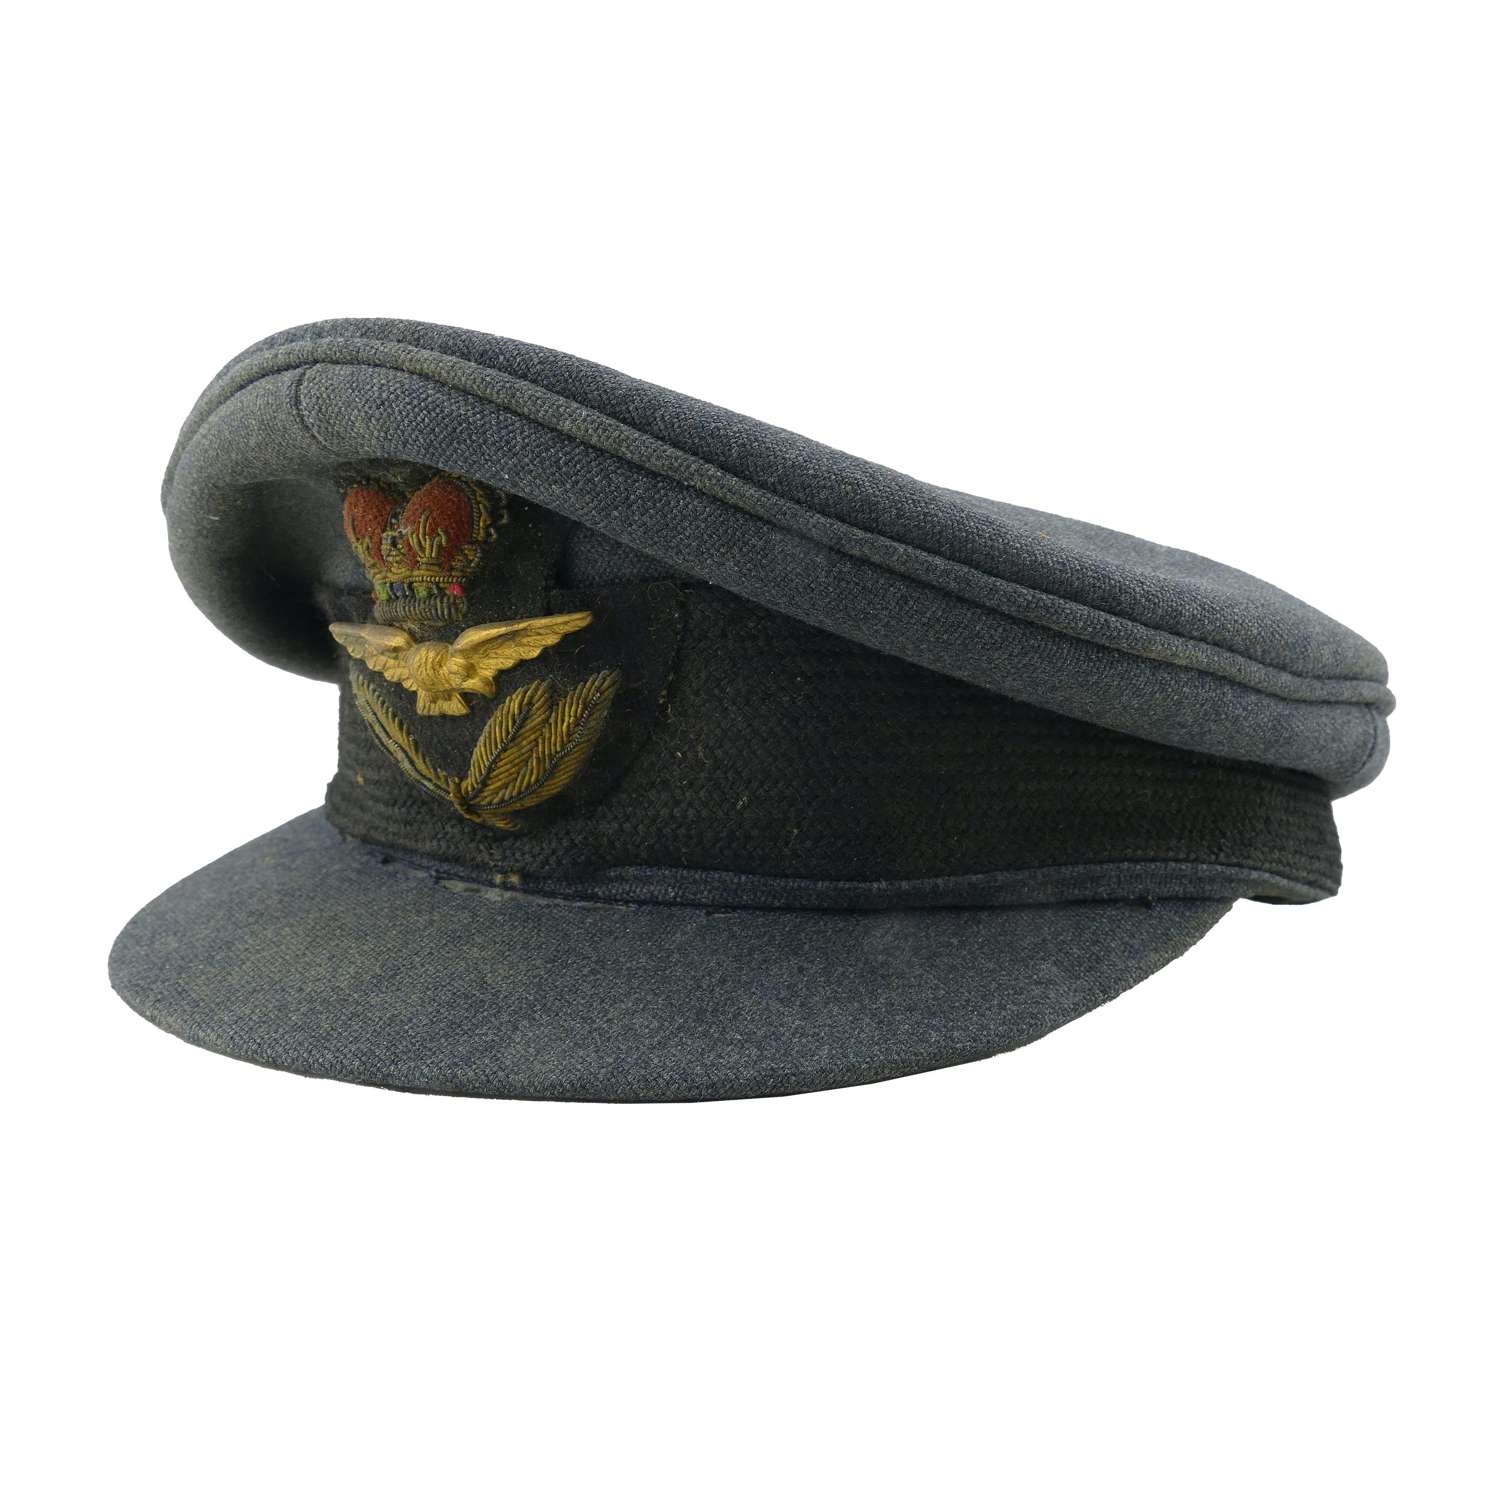 RAF officer rank service dress cap, postwar